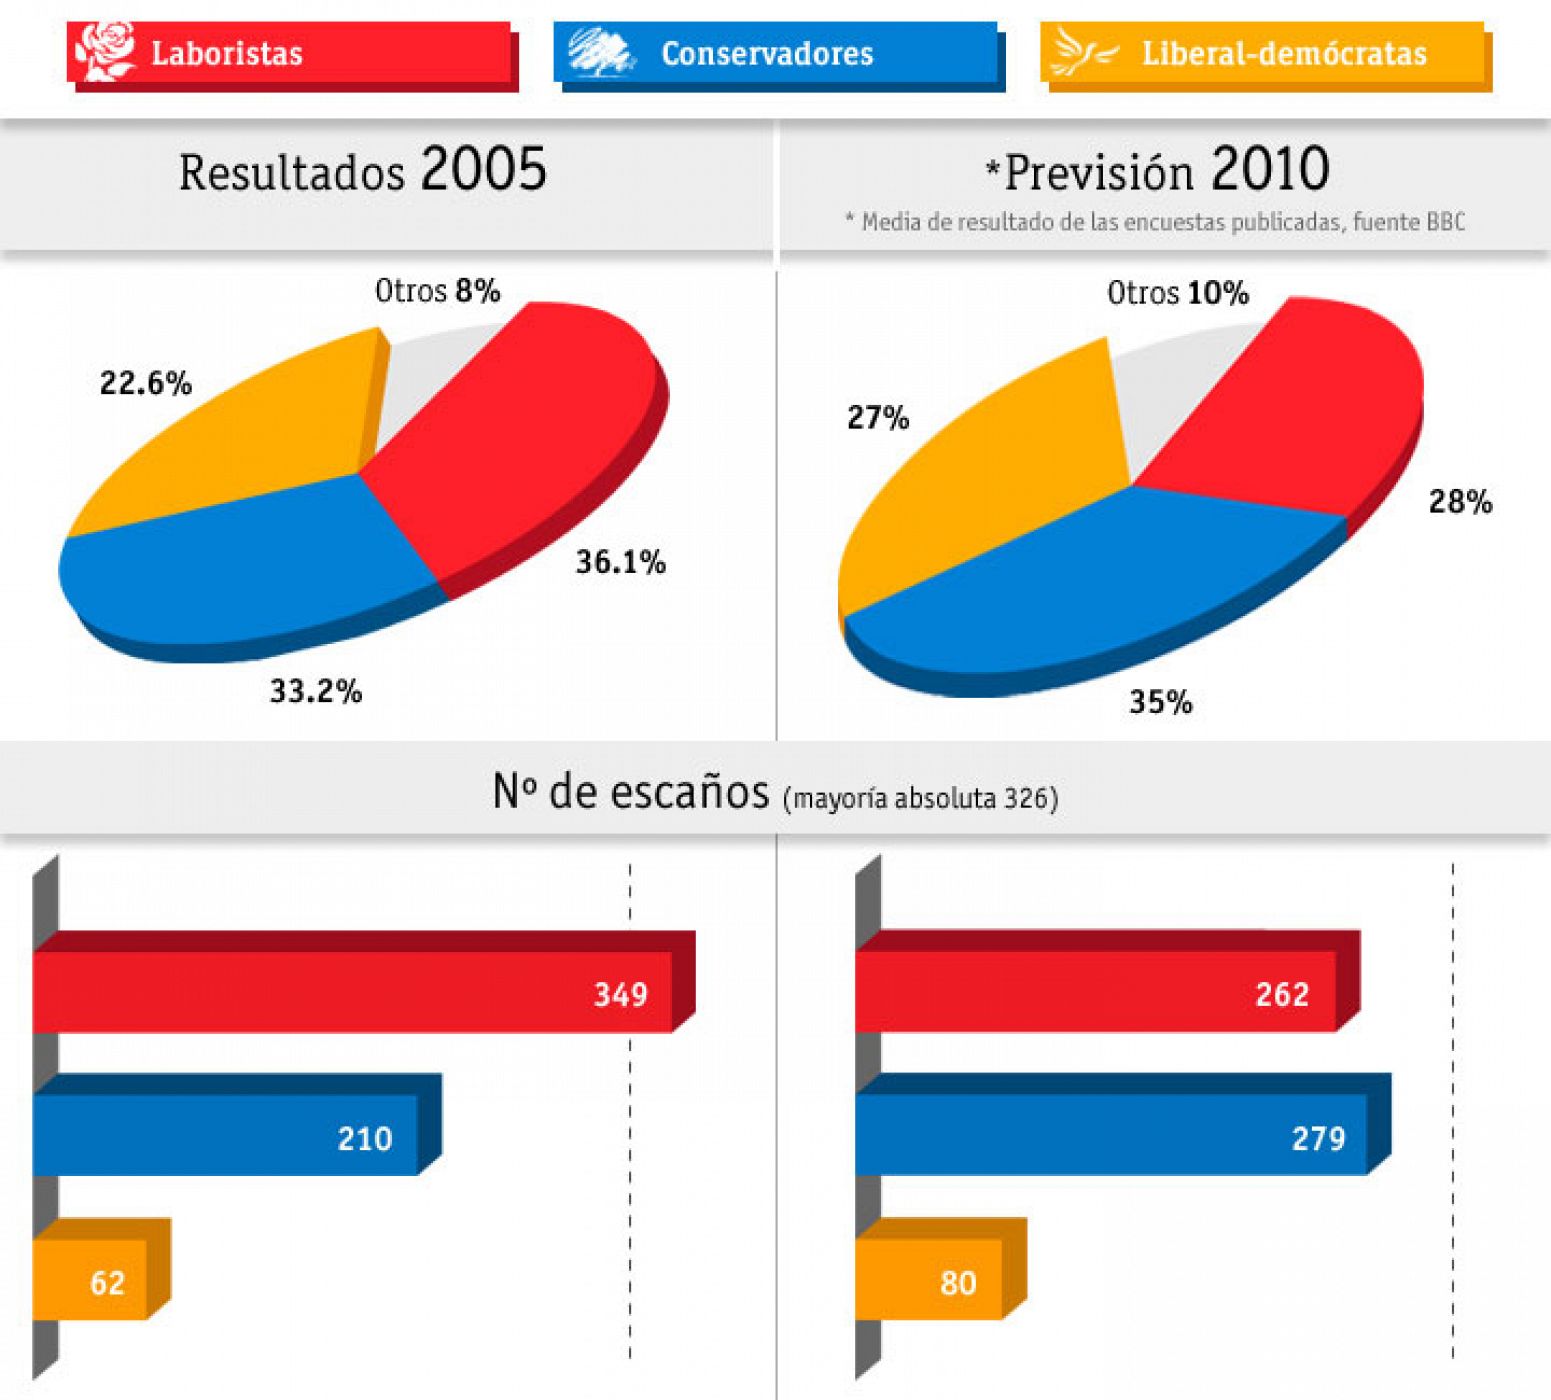 Comparativa de los resultados de 2005 y las proyecciones de 2010.